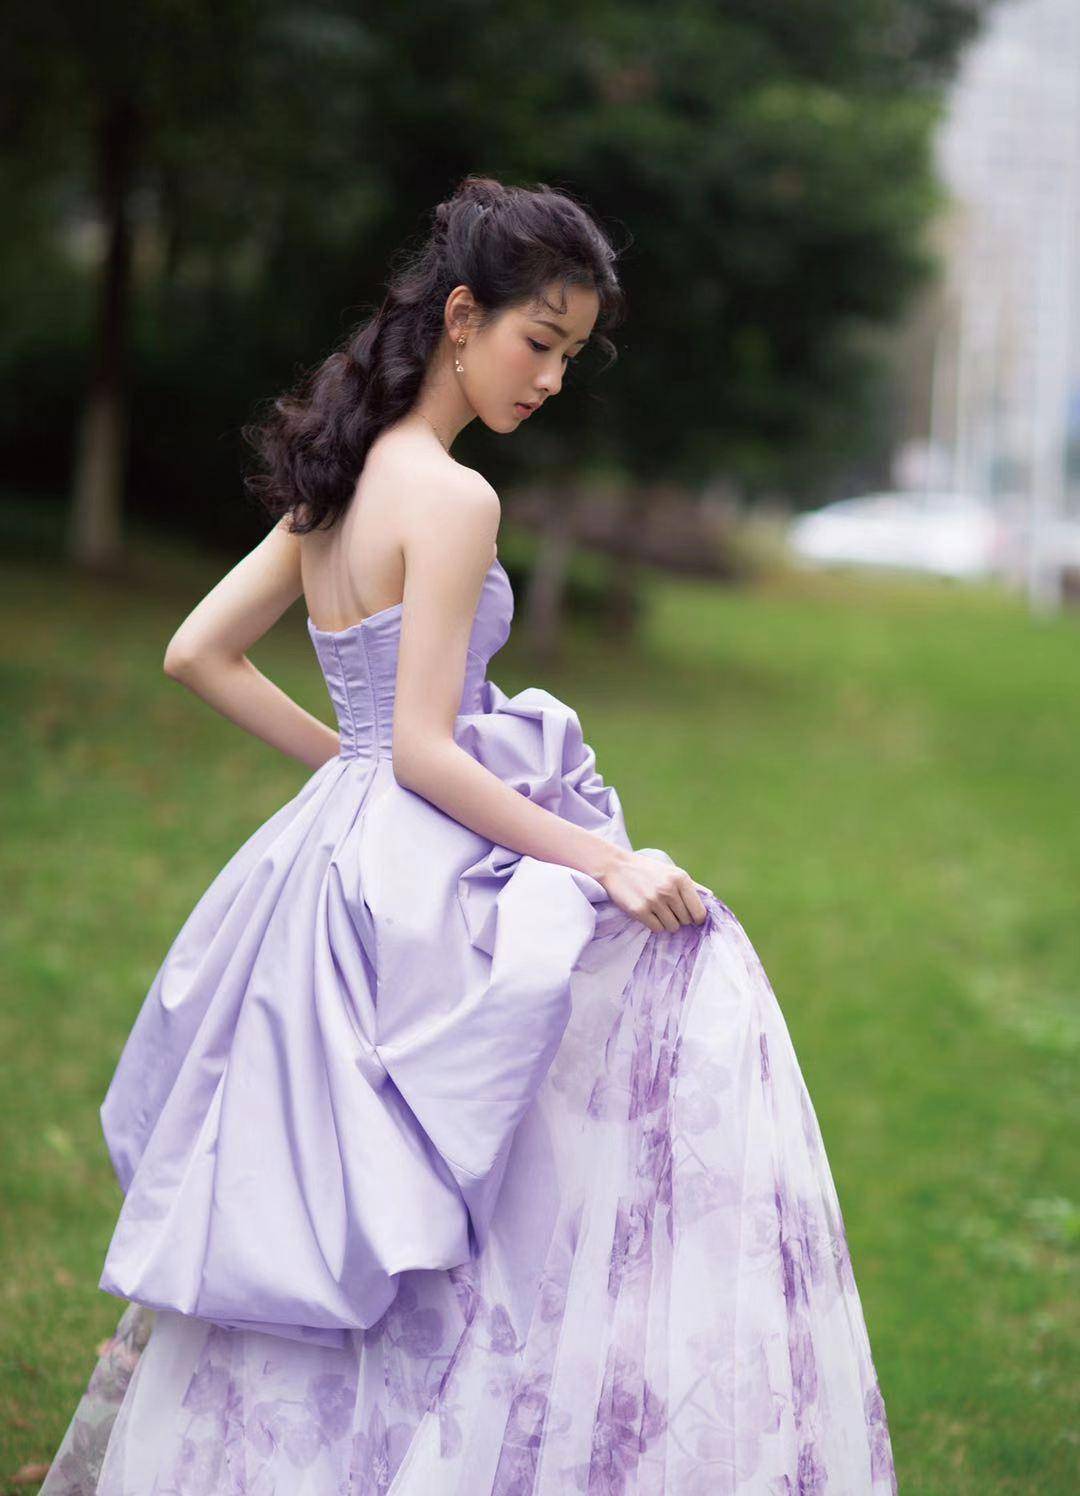 陈都灵凡尔赛造型上热搜,淡紫色抹身材裙宛如梦中精灵,清纯可人